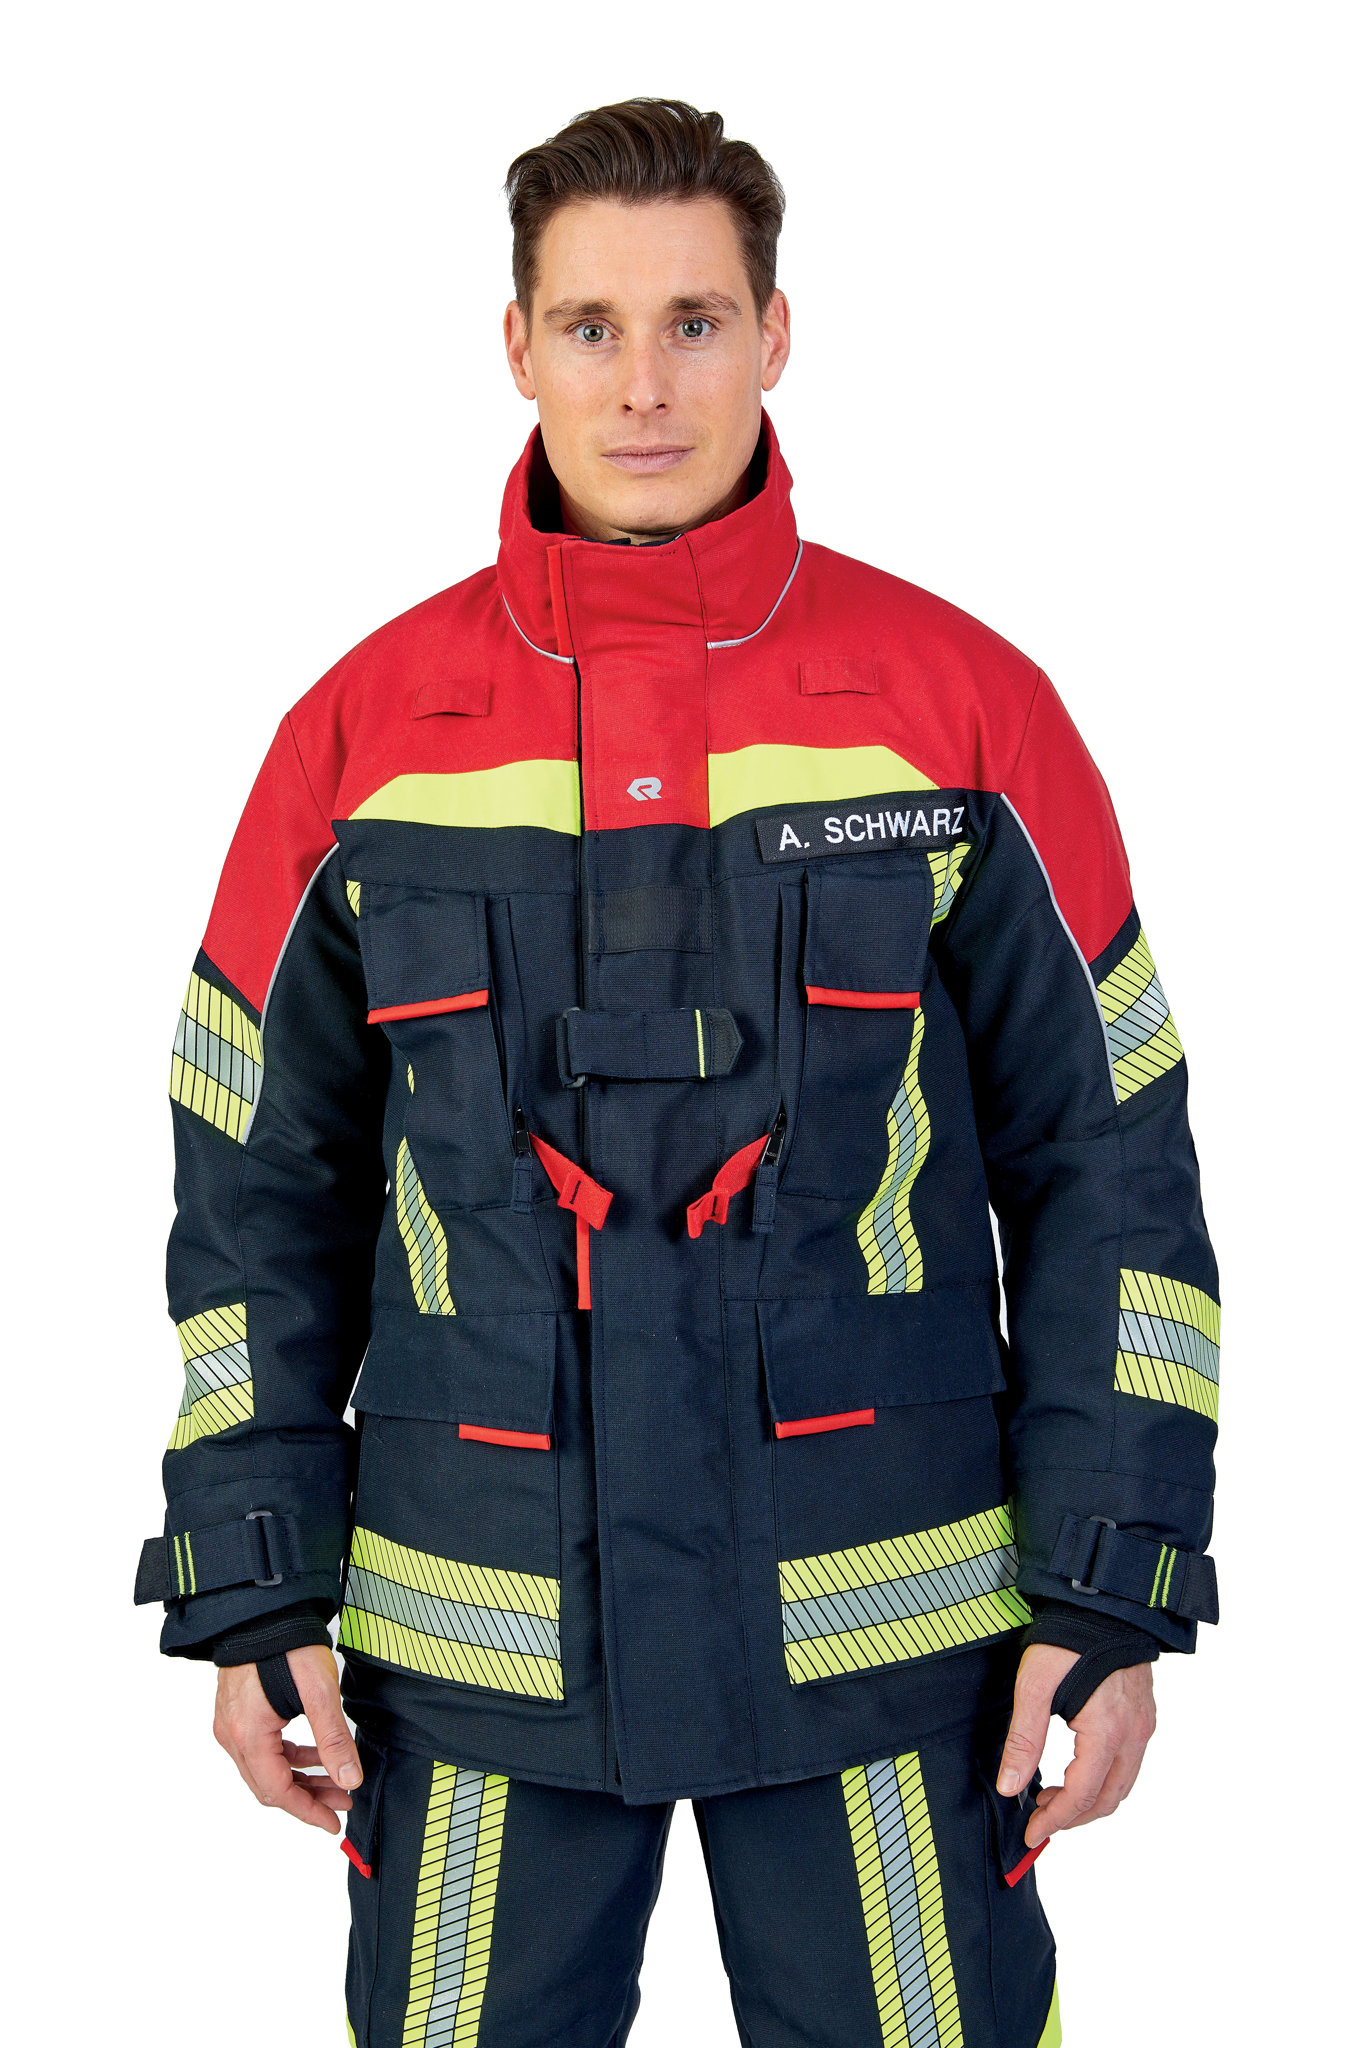 Bild von ROSENBAUER Feuerwehreinsatzjacke FIRE FLEX, NOMEX NXT, schwarzblau/rot, Gr. 52-54 E